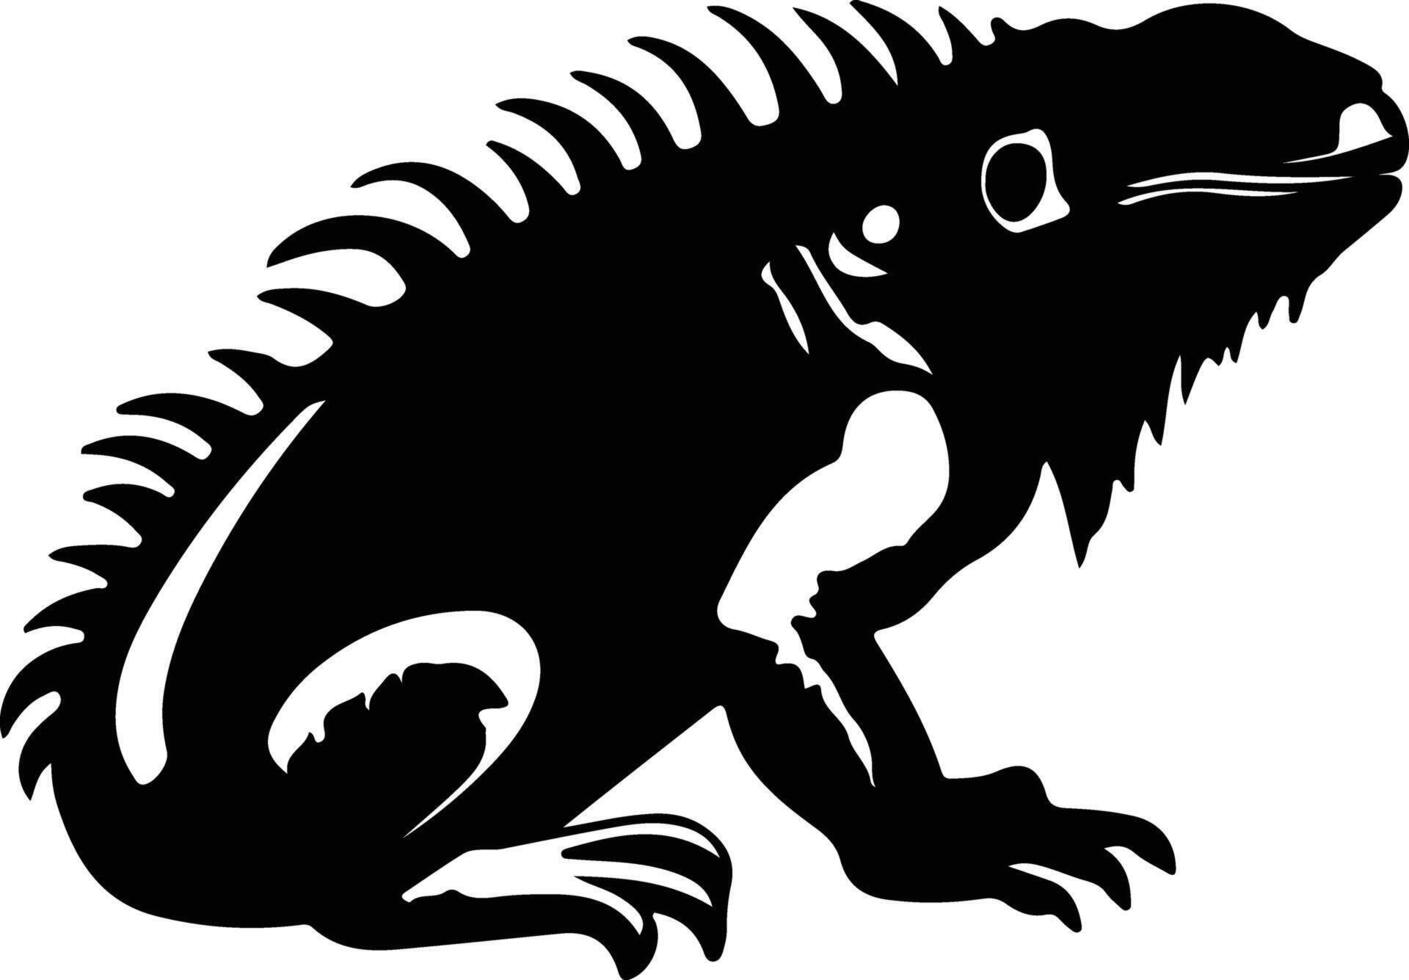 iguana nero silhouette vettore